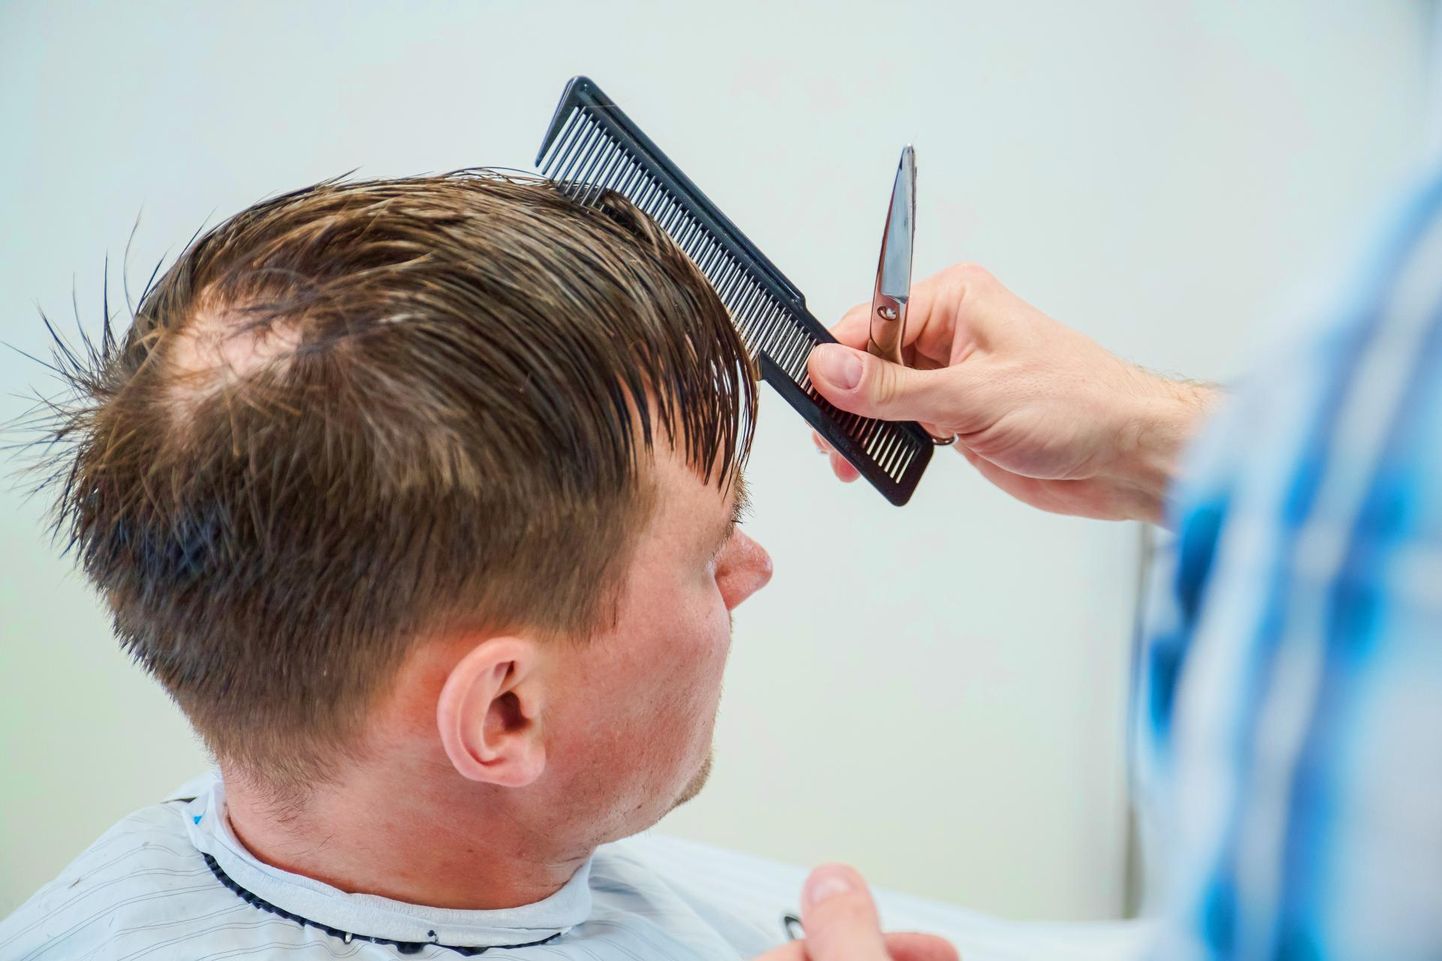 Osa juuksuriärisid on suletud, osa jätkab väiksema töömahuga. Pilt on tehtud ajal, kui juuksuri juures käik oli elu normaalne osa.